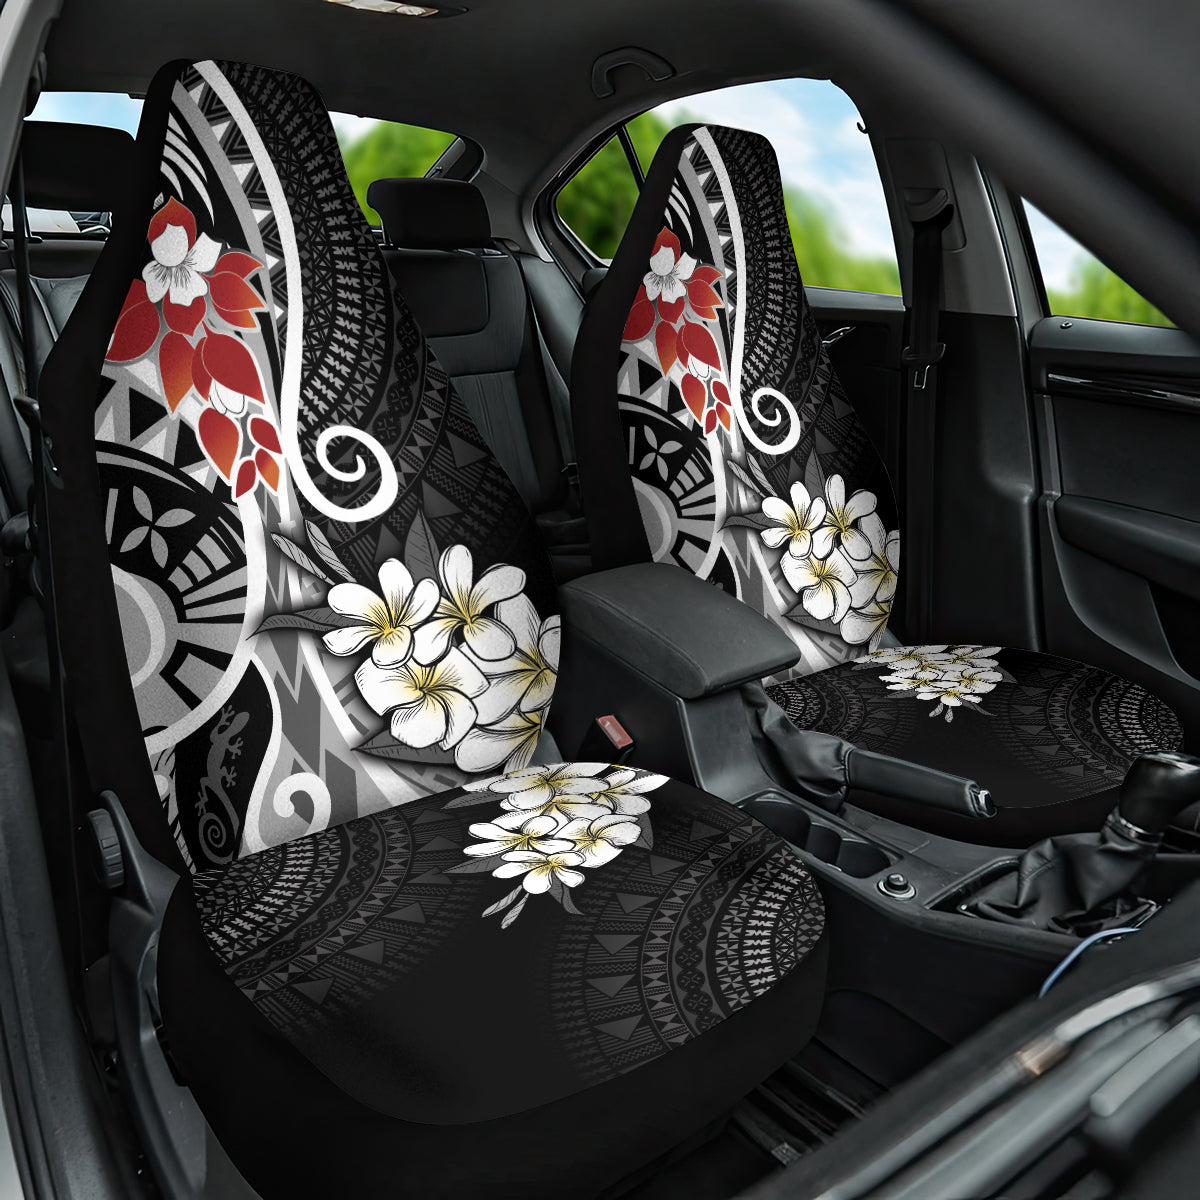 Bula Fiji Tagimaucia Mix Plumeria Masi Tapa Car Seat Cover Black